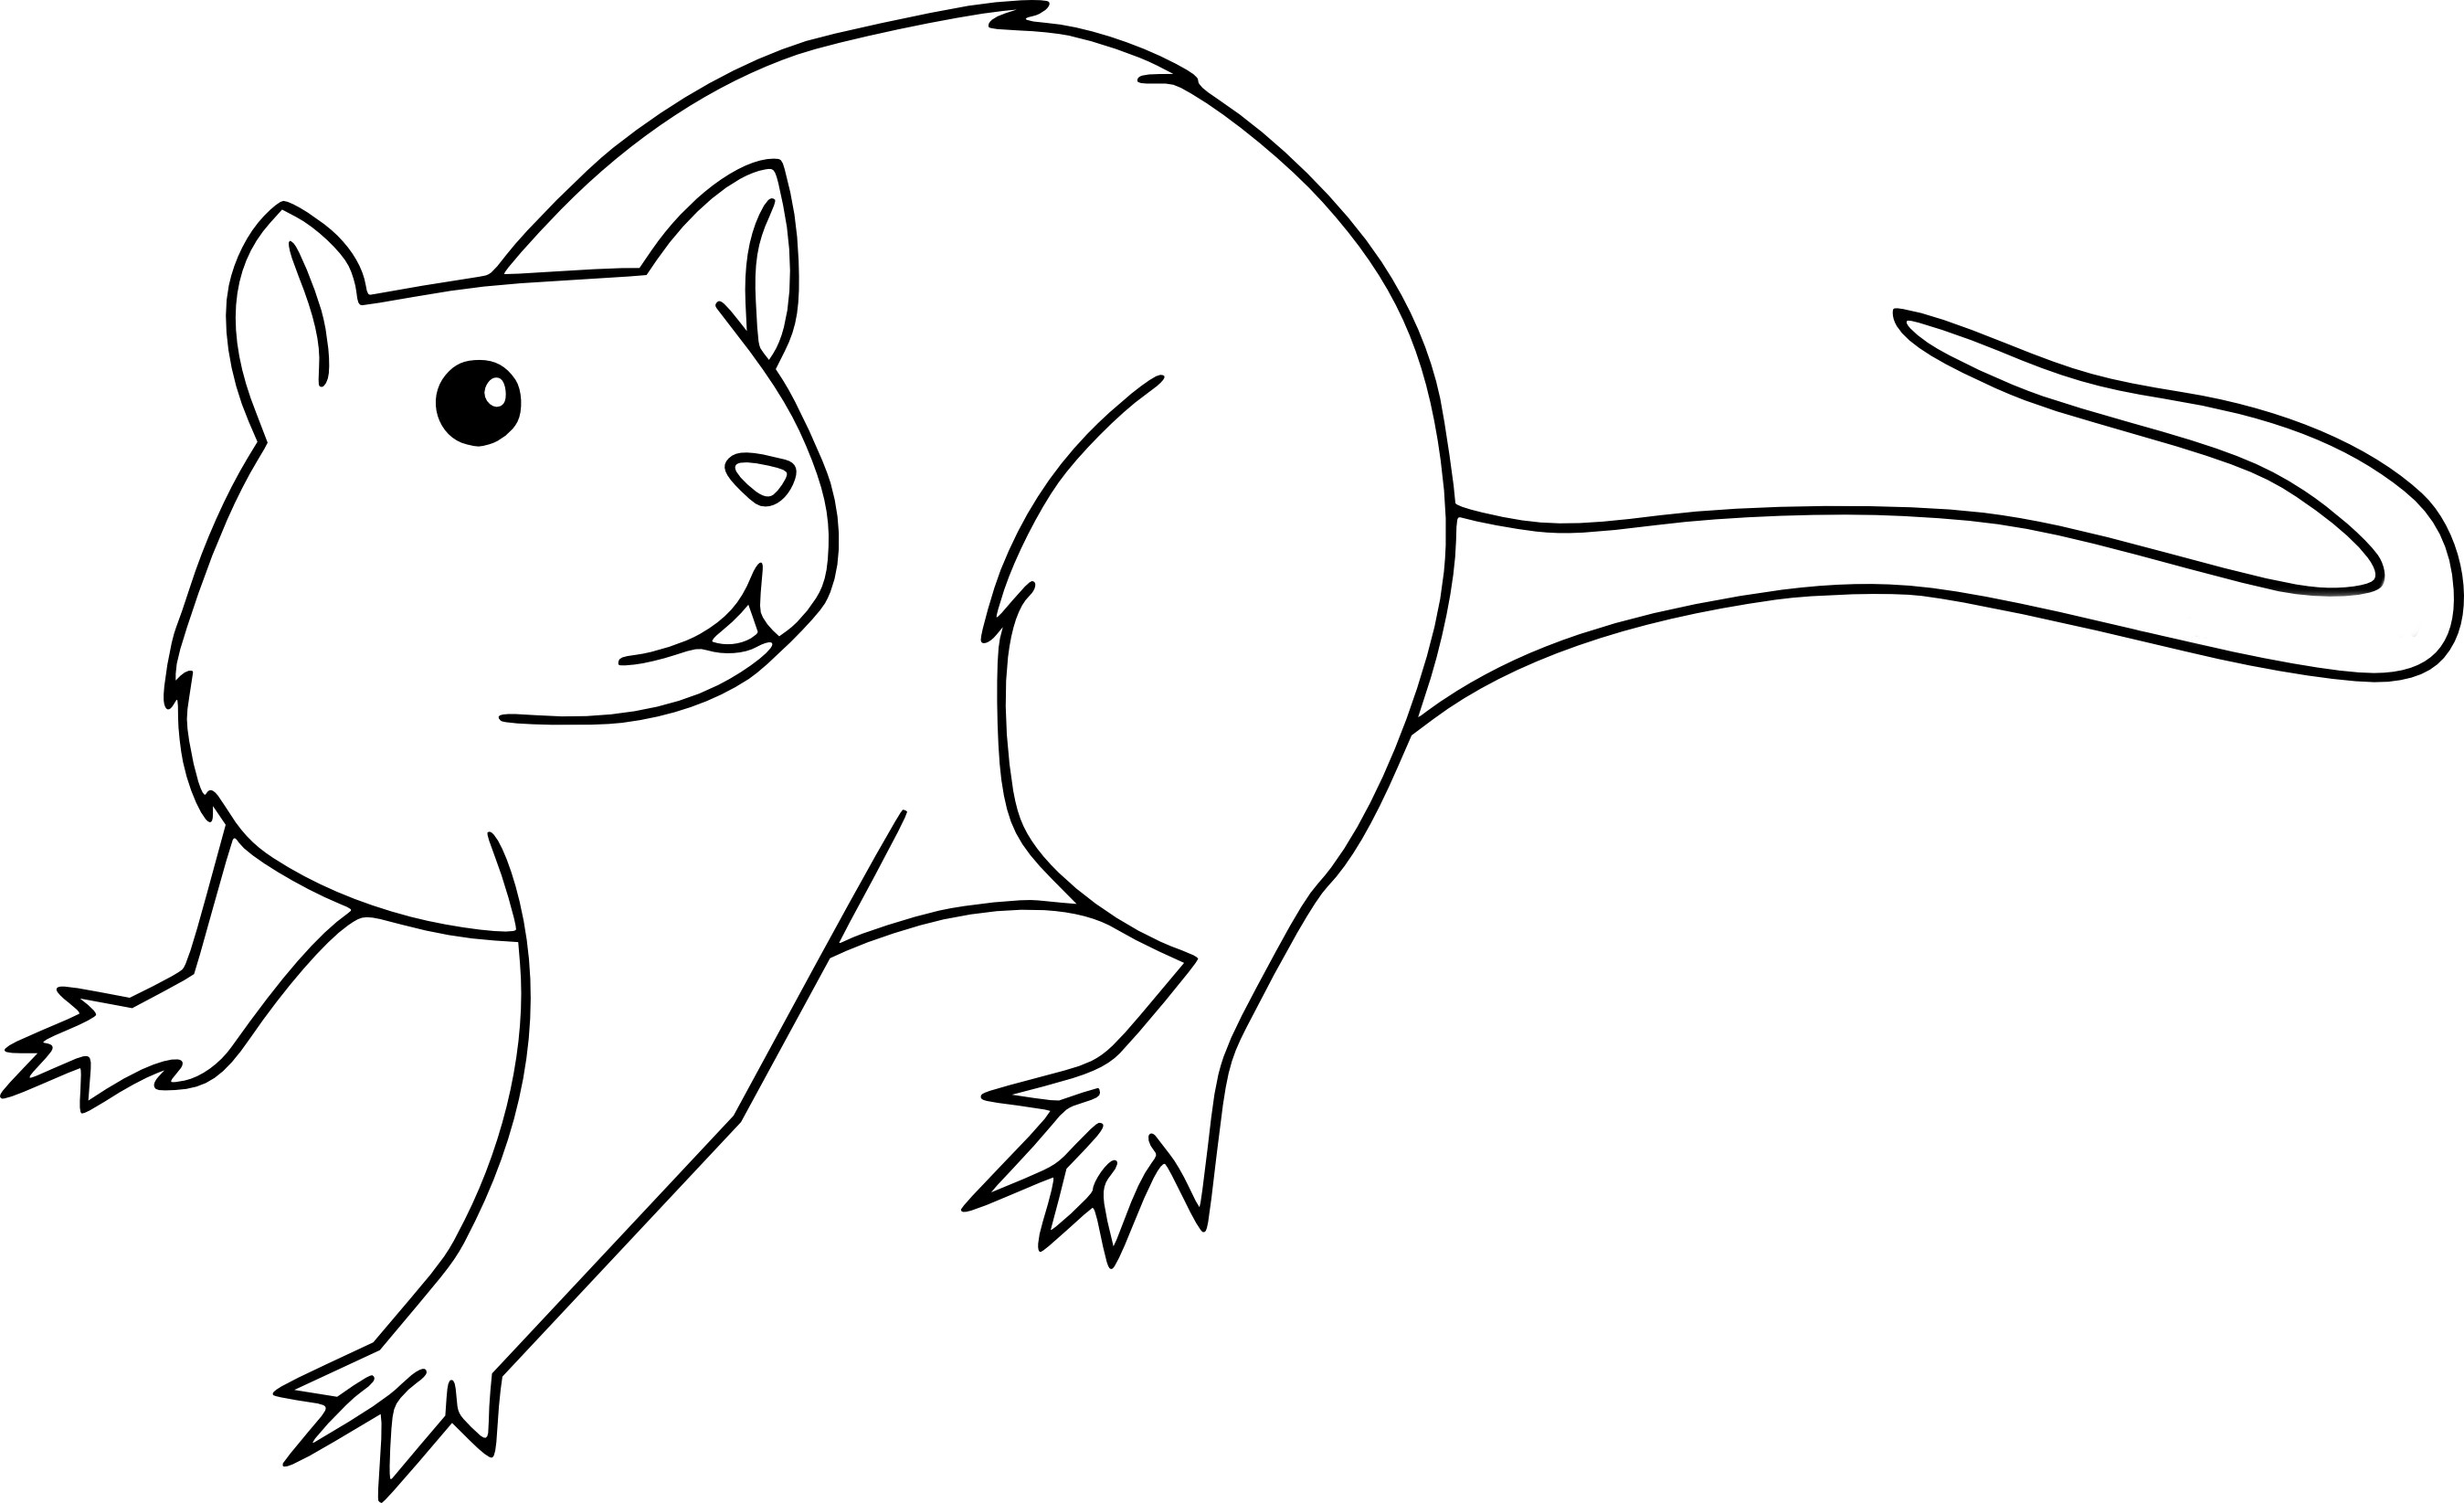 Disegno di Disegno del ratto e da colorare